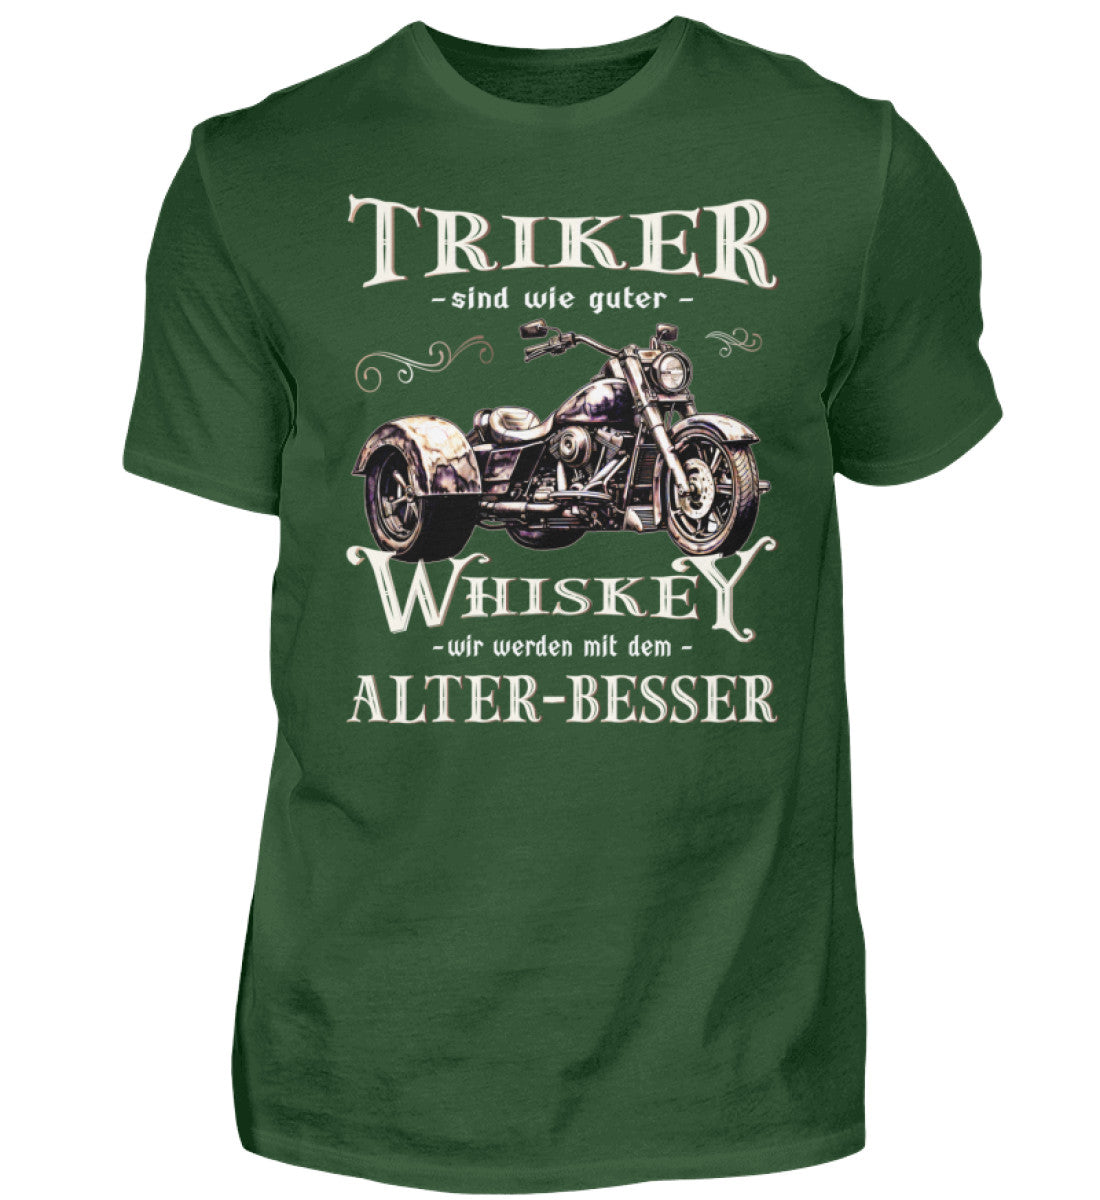 Ein T-Shirt für Trike Fahrer von Wingbikers mit dem Aufdruck, Triker sind wie guter Whiskey - Wir werden mit dem Alter besser, in dunkelgrün.